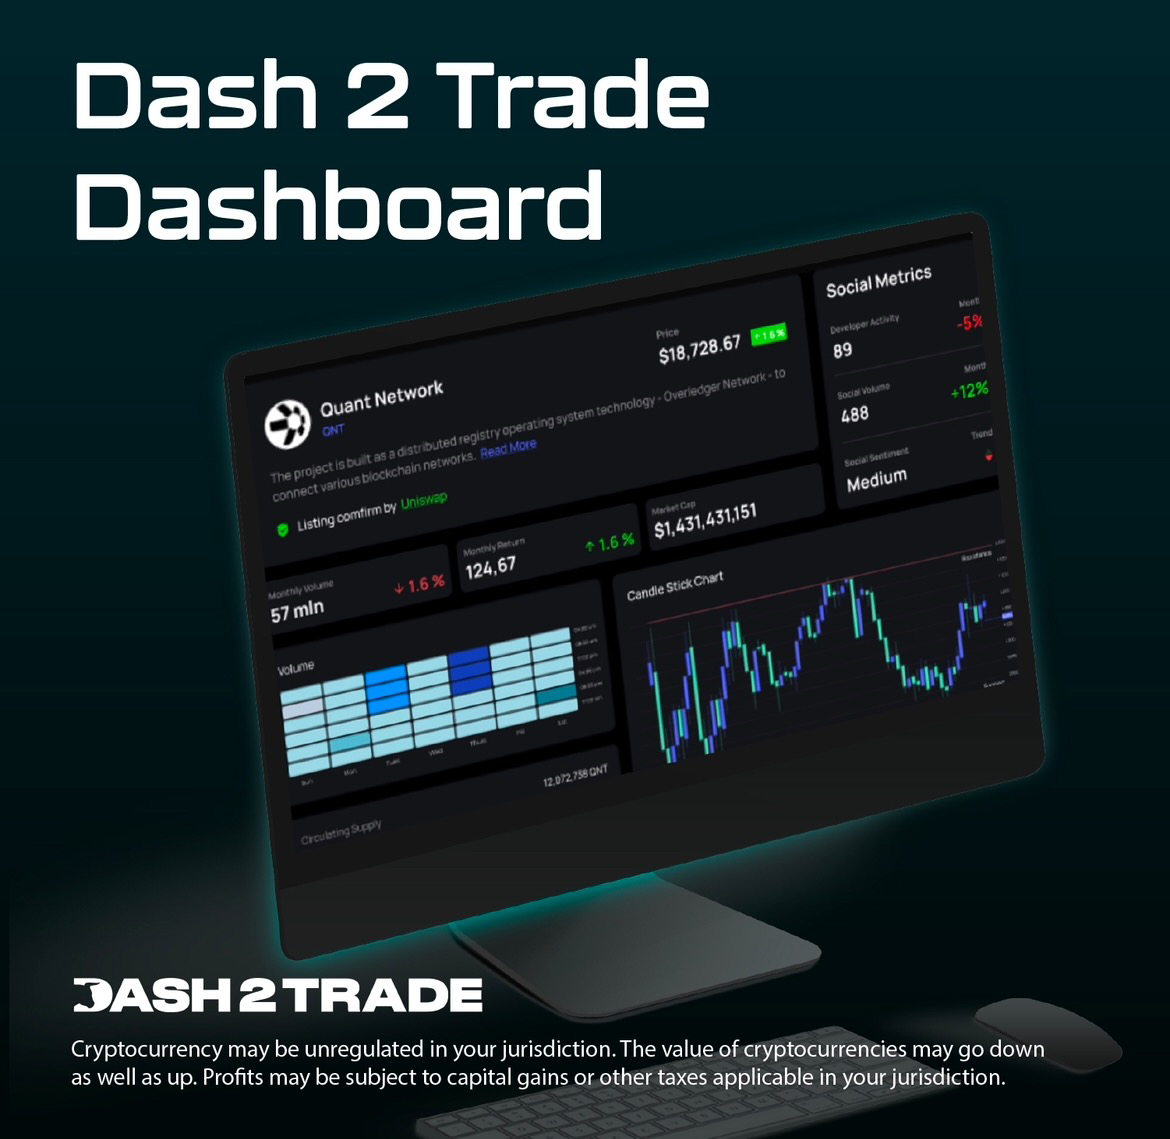 ICO do Dash 2 Trade arrecada US$ 12 milhões, faltam apenas 3 dias para investir – lançamento do Dashboard Beta na quarta-feira, listagens CEX em 11 de janeiro